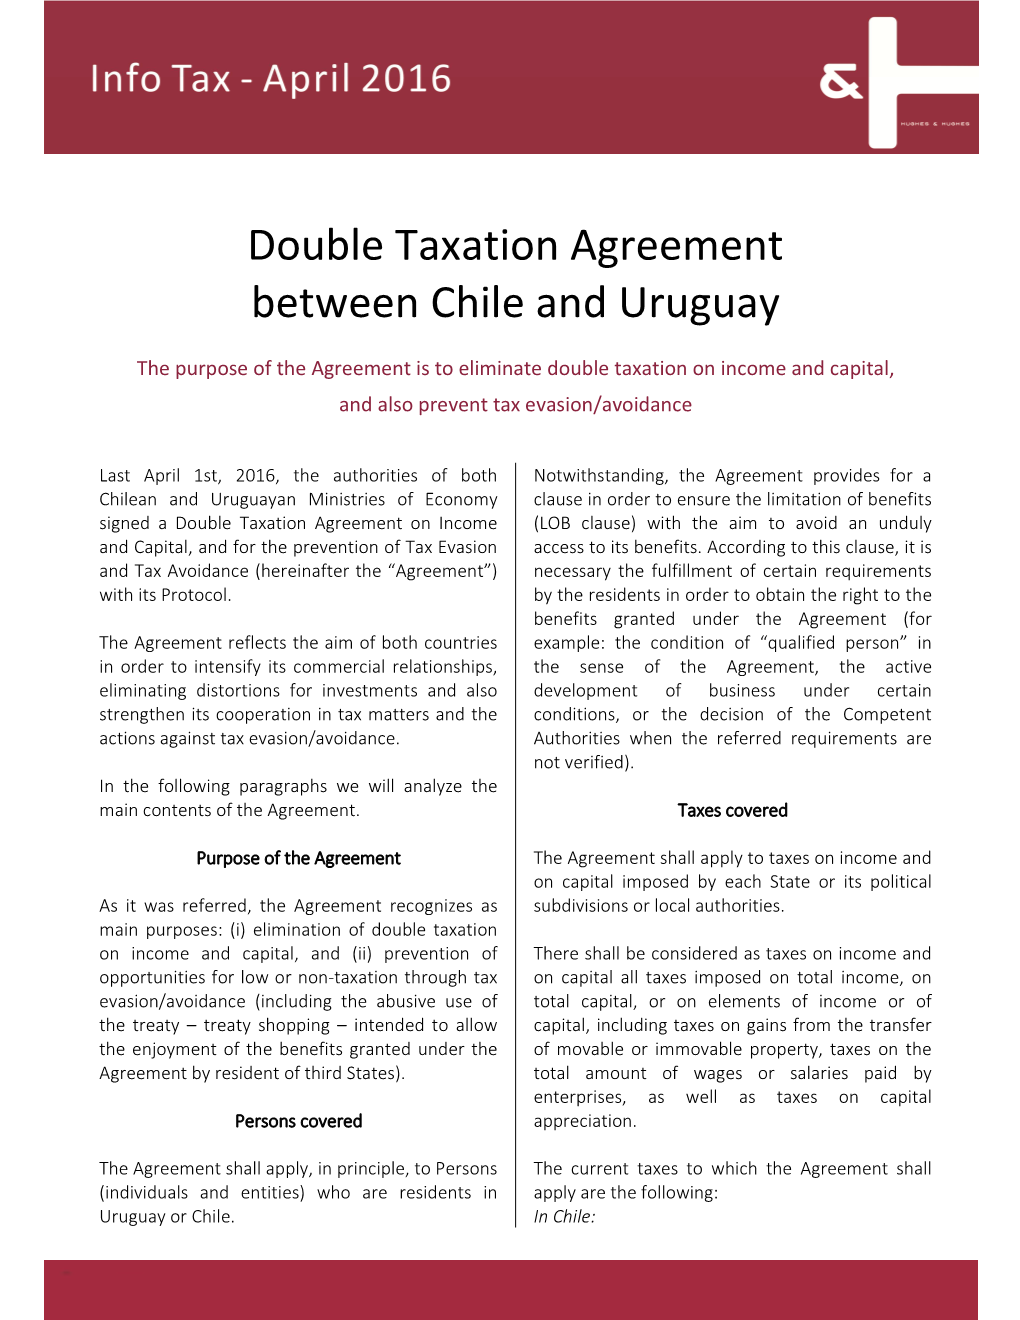 Info Tax April Chile Uruguay